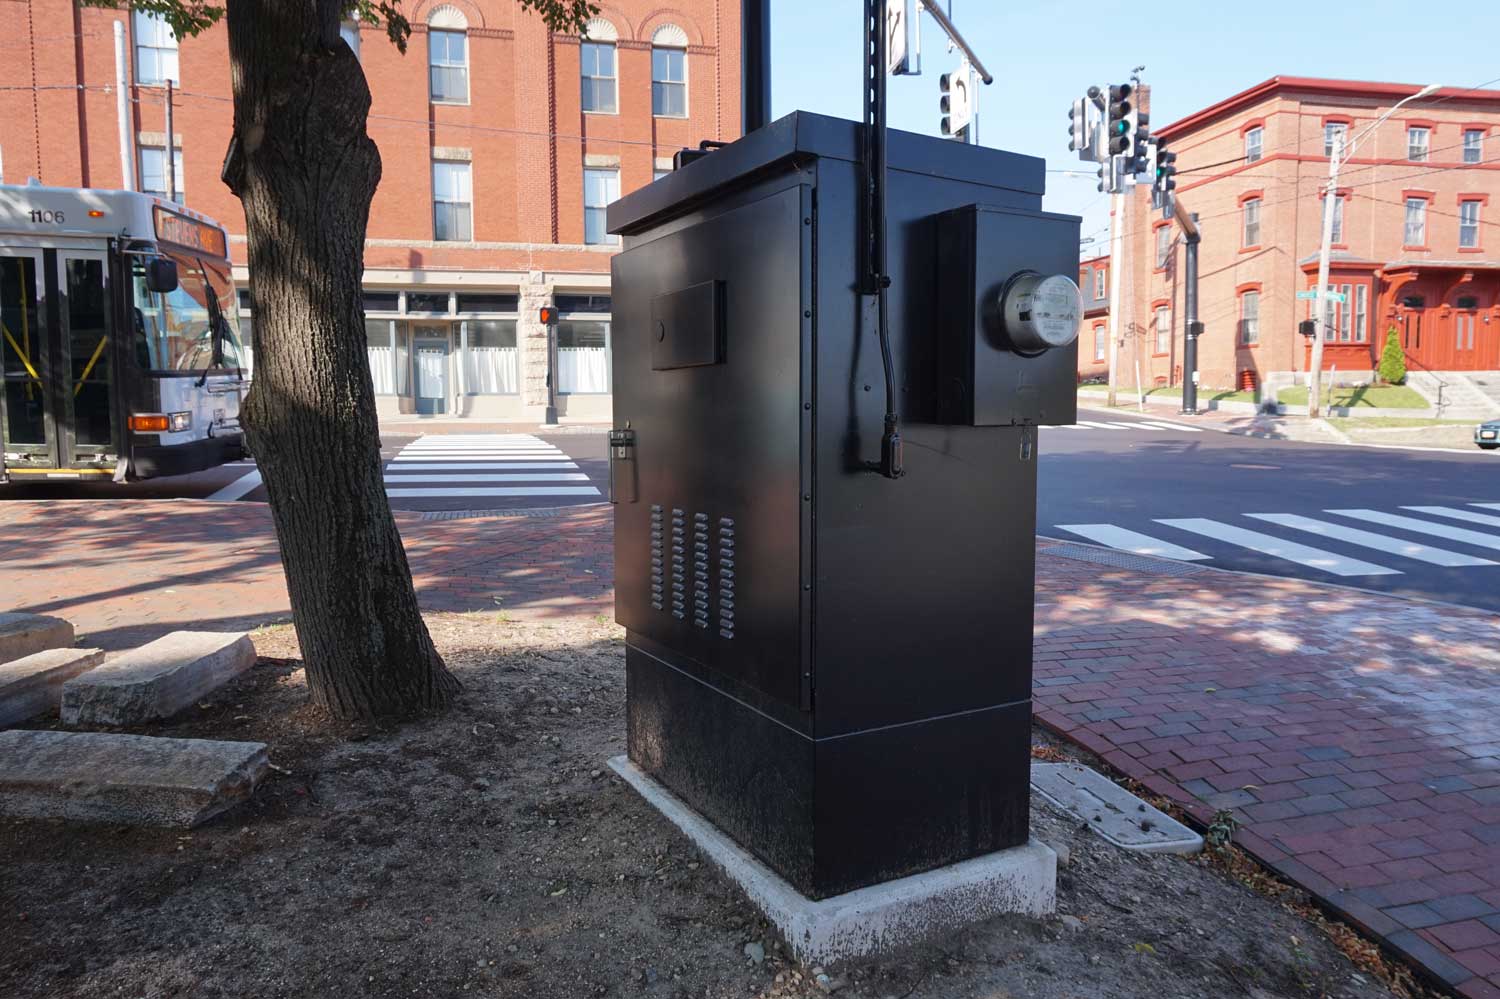 Public Art Utility Box - The West End News